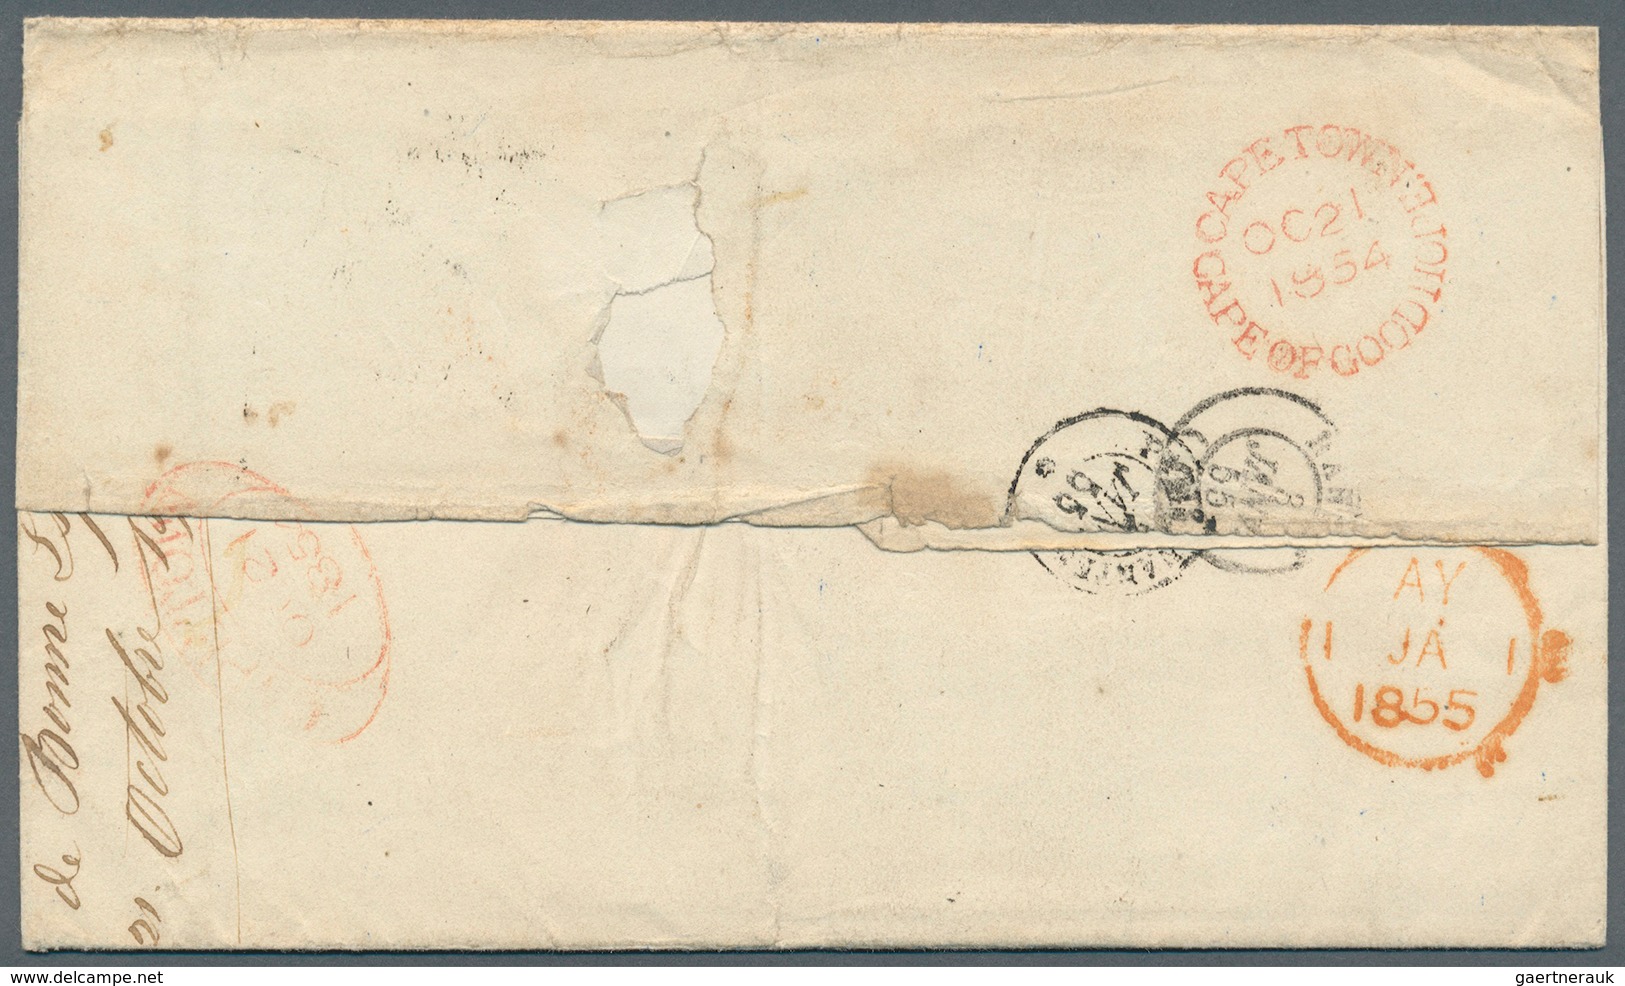 Kap Der Guten Hoffnung: 1854. Stampless 'Returned Letter' Envelope Written From The 'General Post Of - Kap Der Guten Hoffnung (1853-1904)